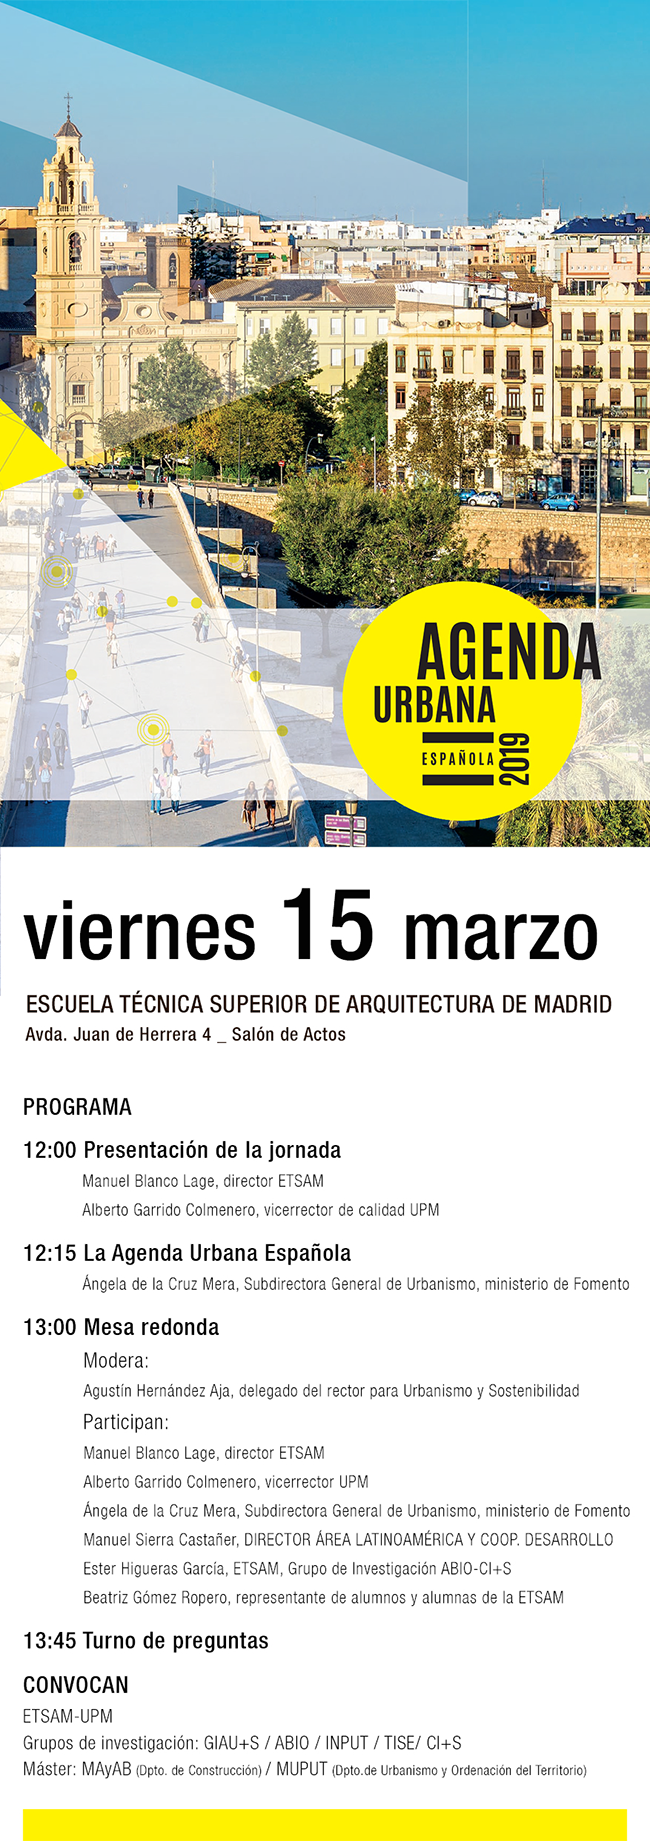 Presentación de la Agenda Urbana Española